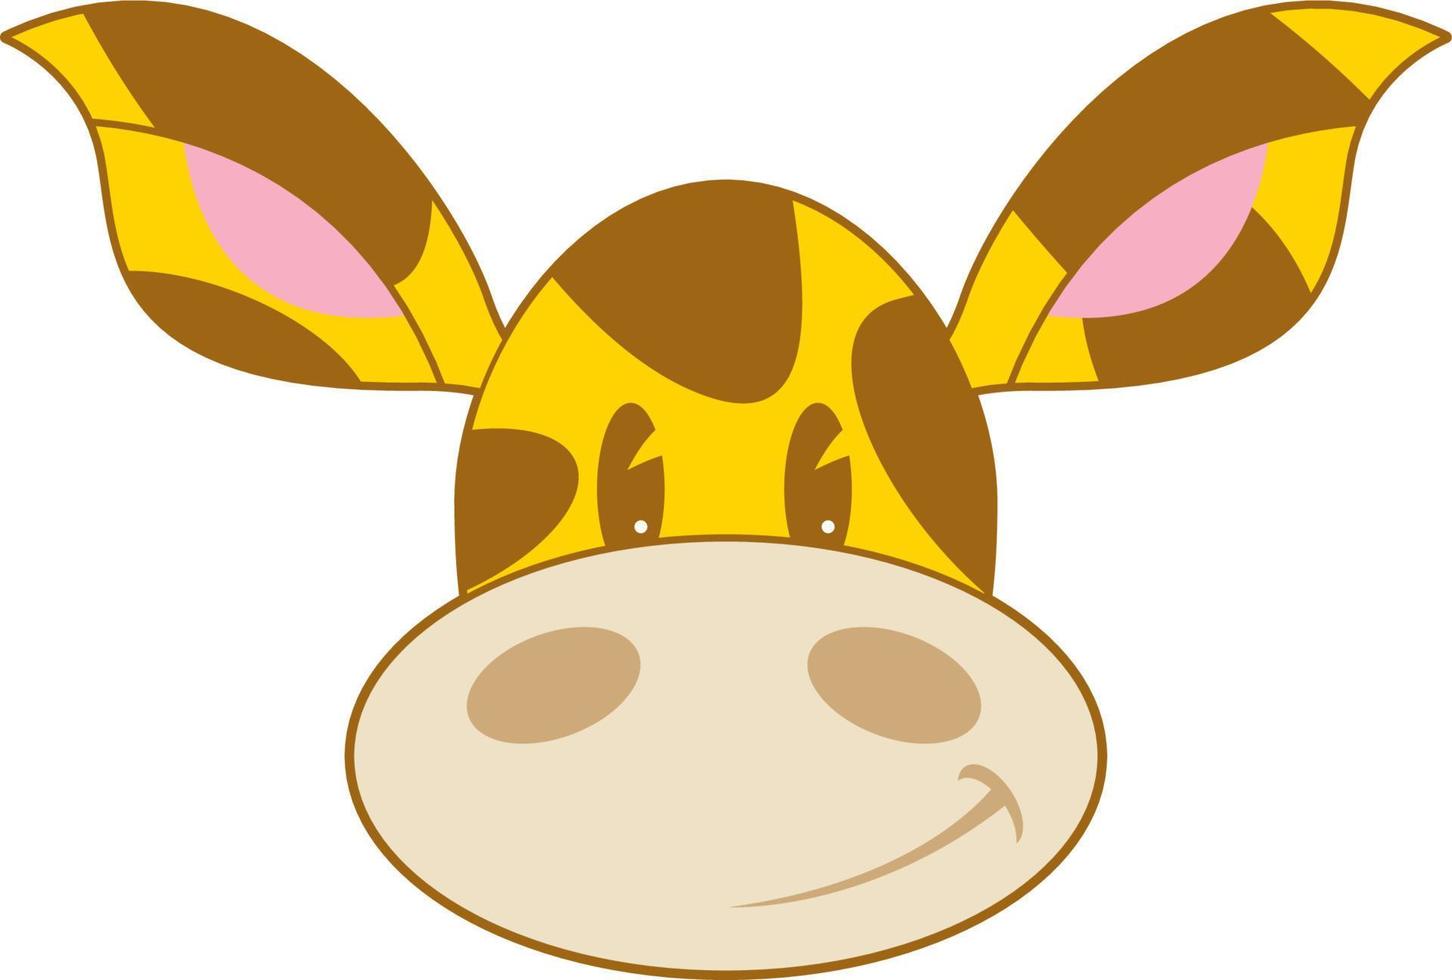 Cute Cartoon Giraffe Character Face vector